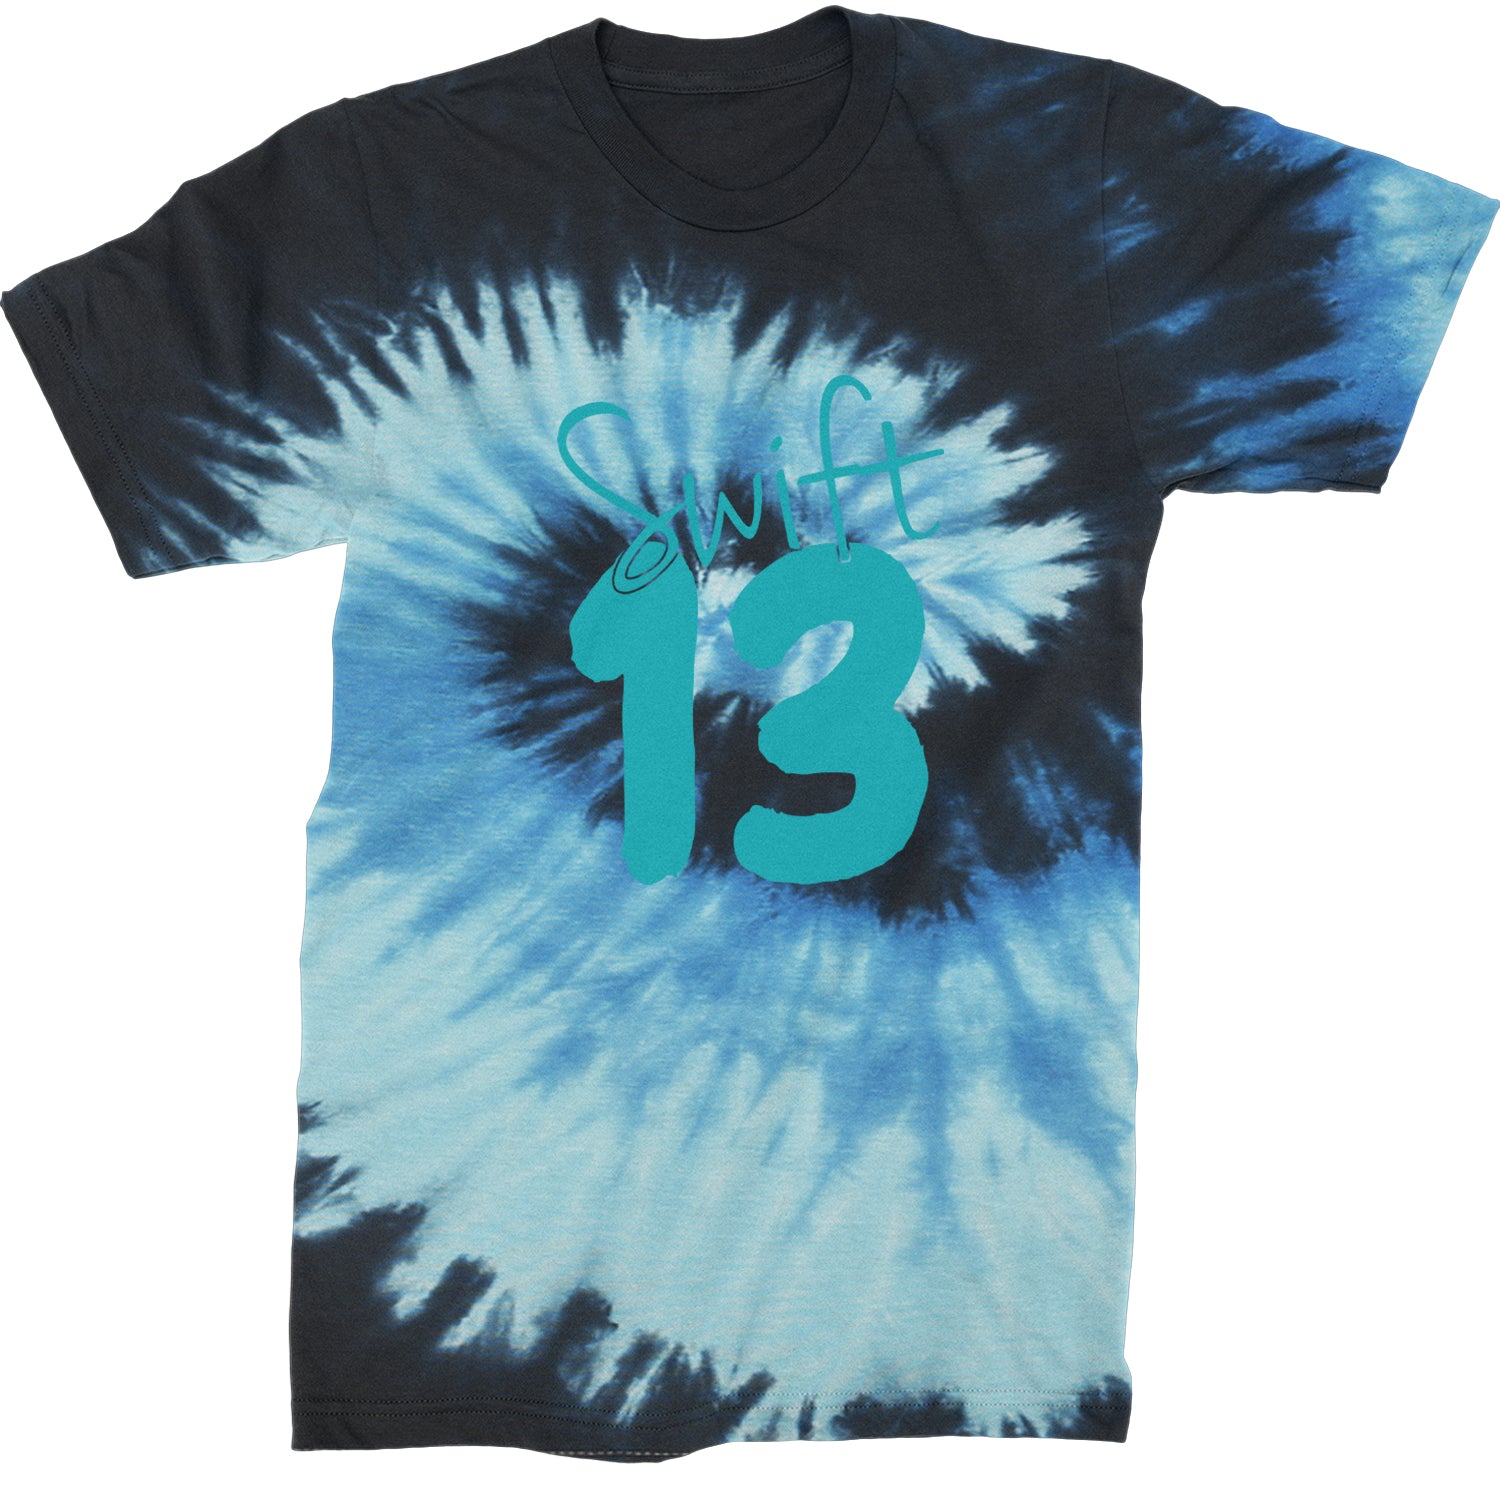 13 Swift 13 Lucky Number Era TTPD Mens T-shirt Tie-Dye Blue Ocean